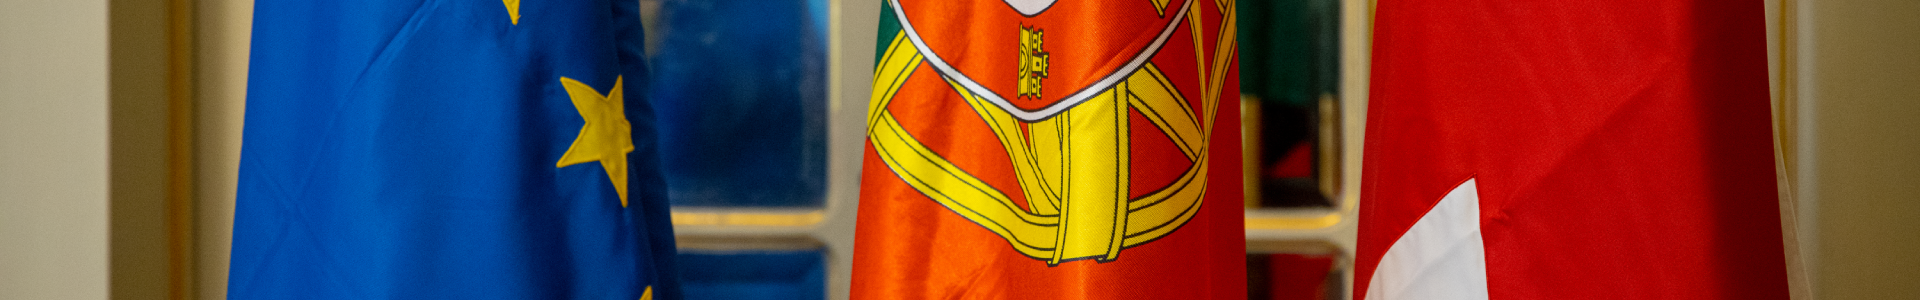 banner Governo Societário - bandeiras da UE, Portugal e ML